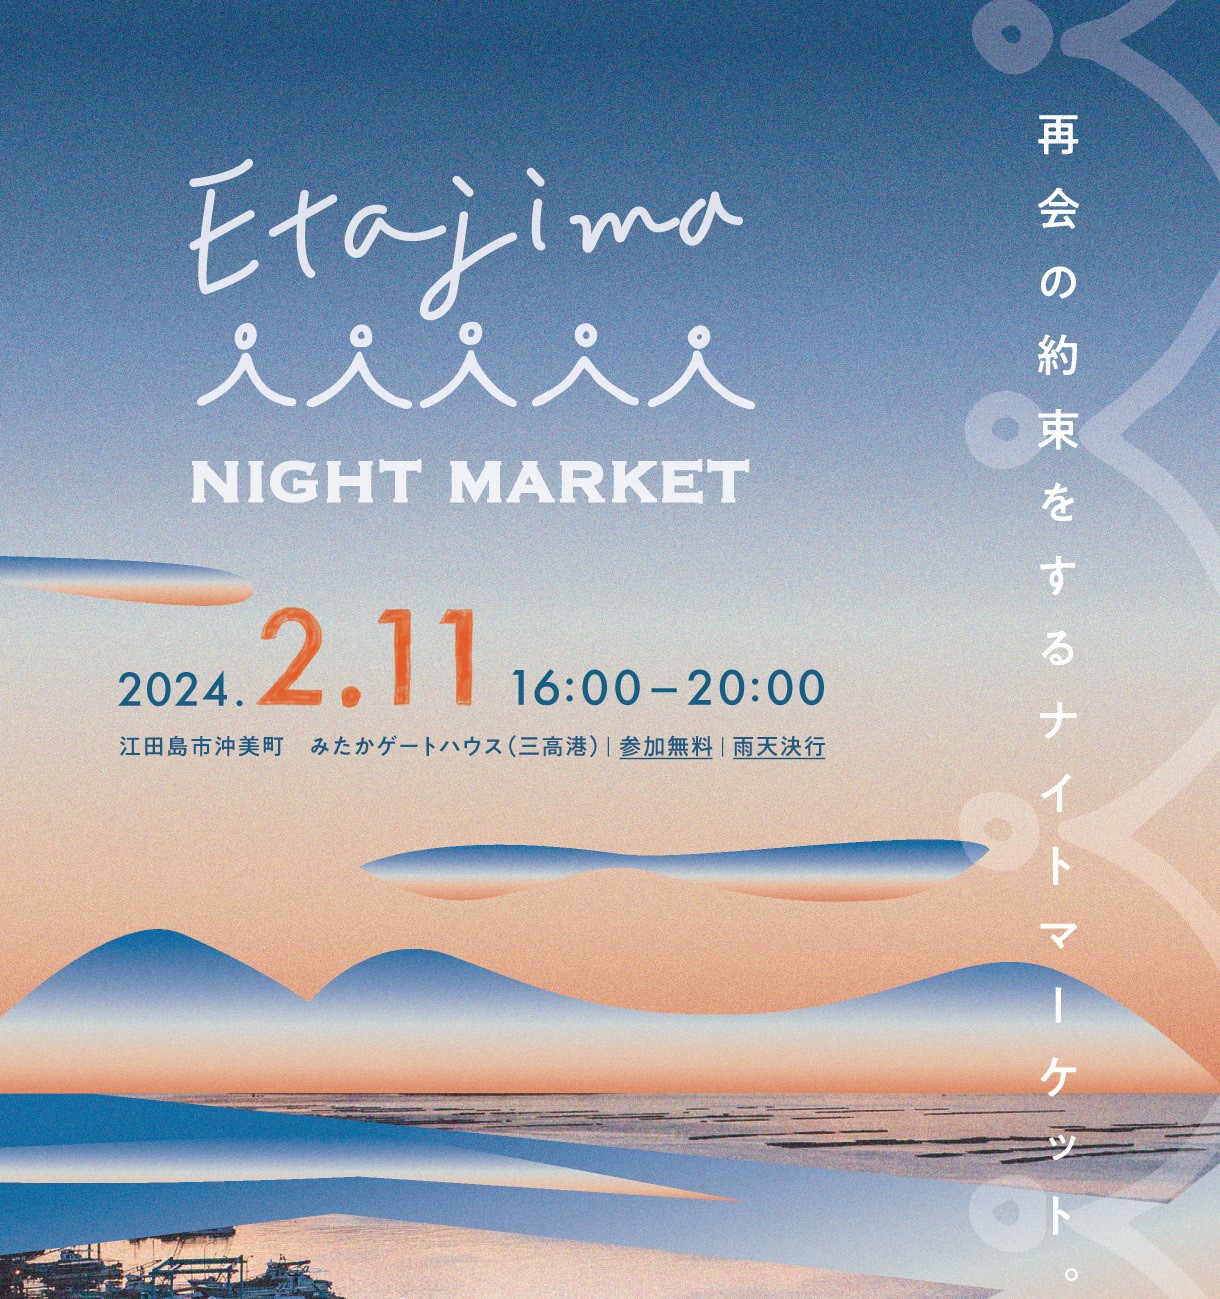 2/11(日)『ETAJIMA NIGHT MARKET』を開催します！～ひろしま里山ウェーブ拡大プロジェクト～